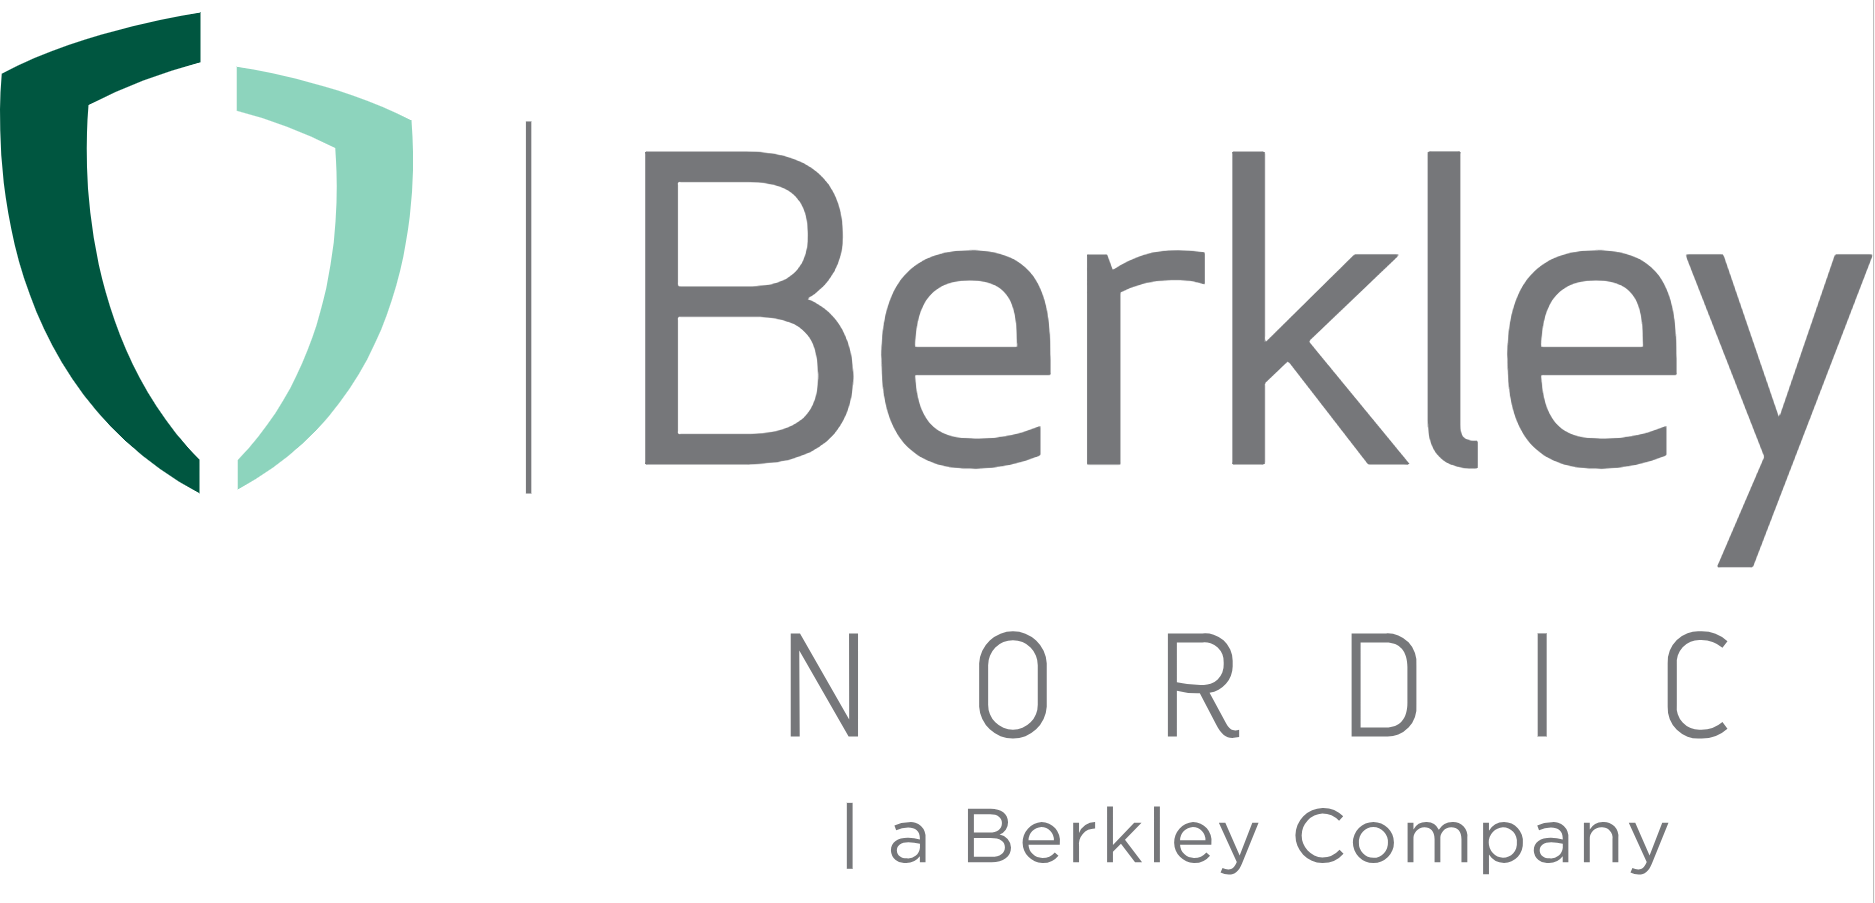 Berkley Nordic